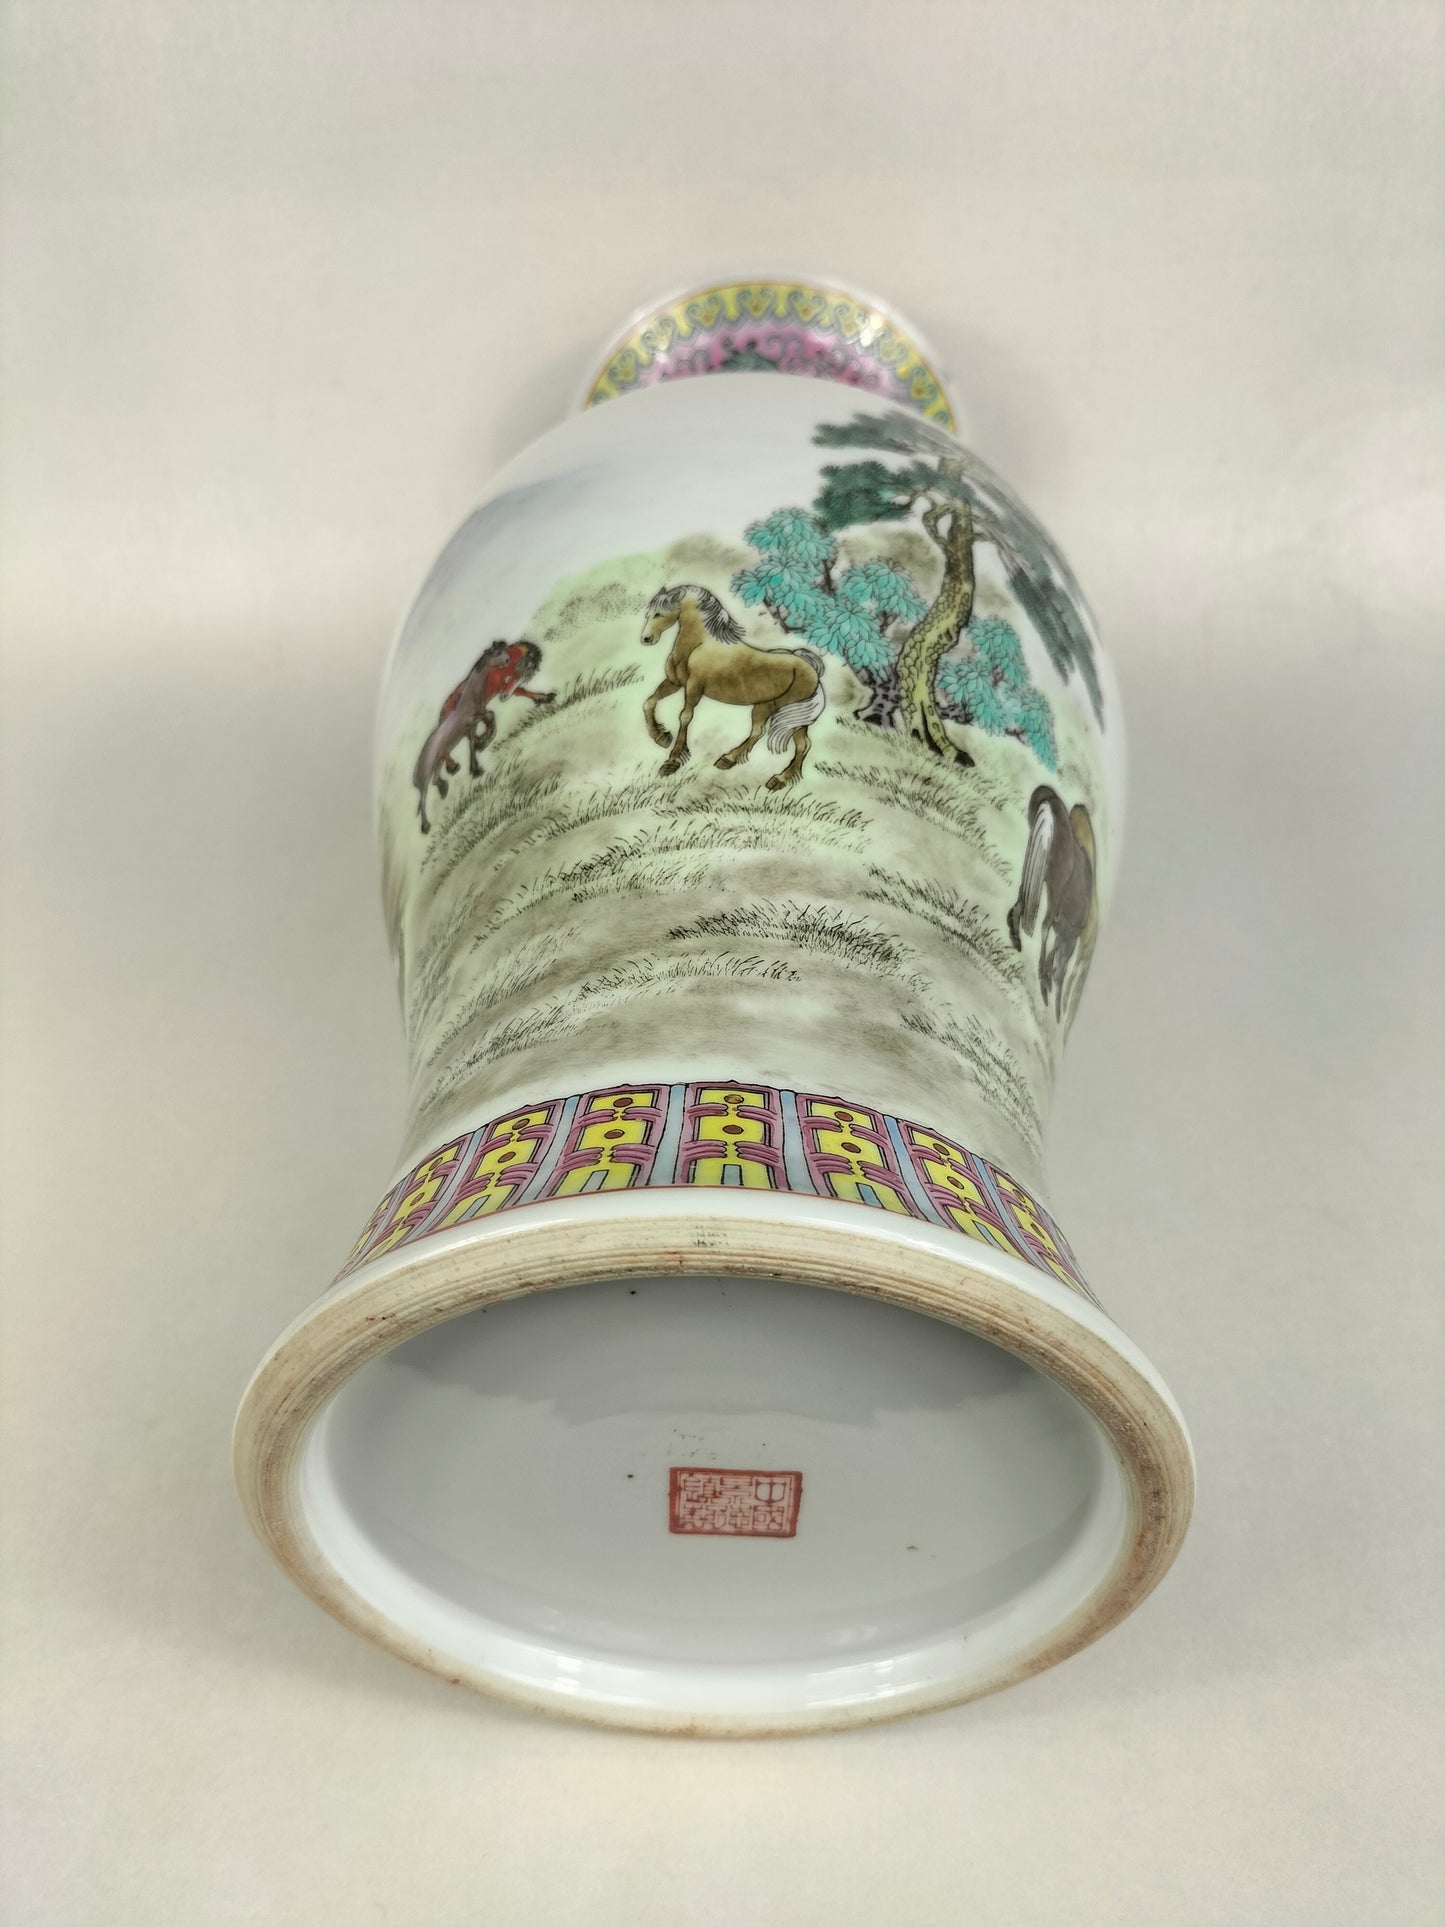 مزهرية ورد عائلية صينية مزينة بالخيول // جينغدتشن - القرن العشرين